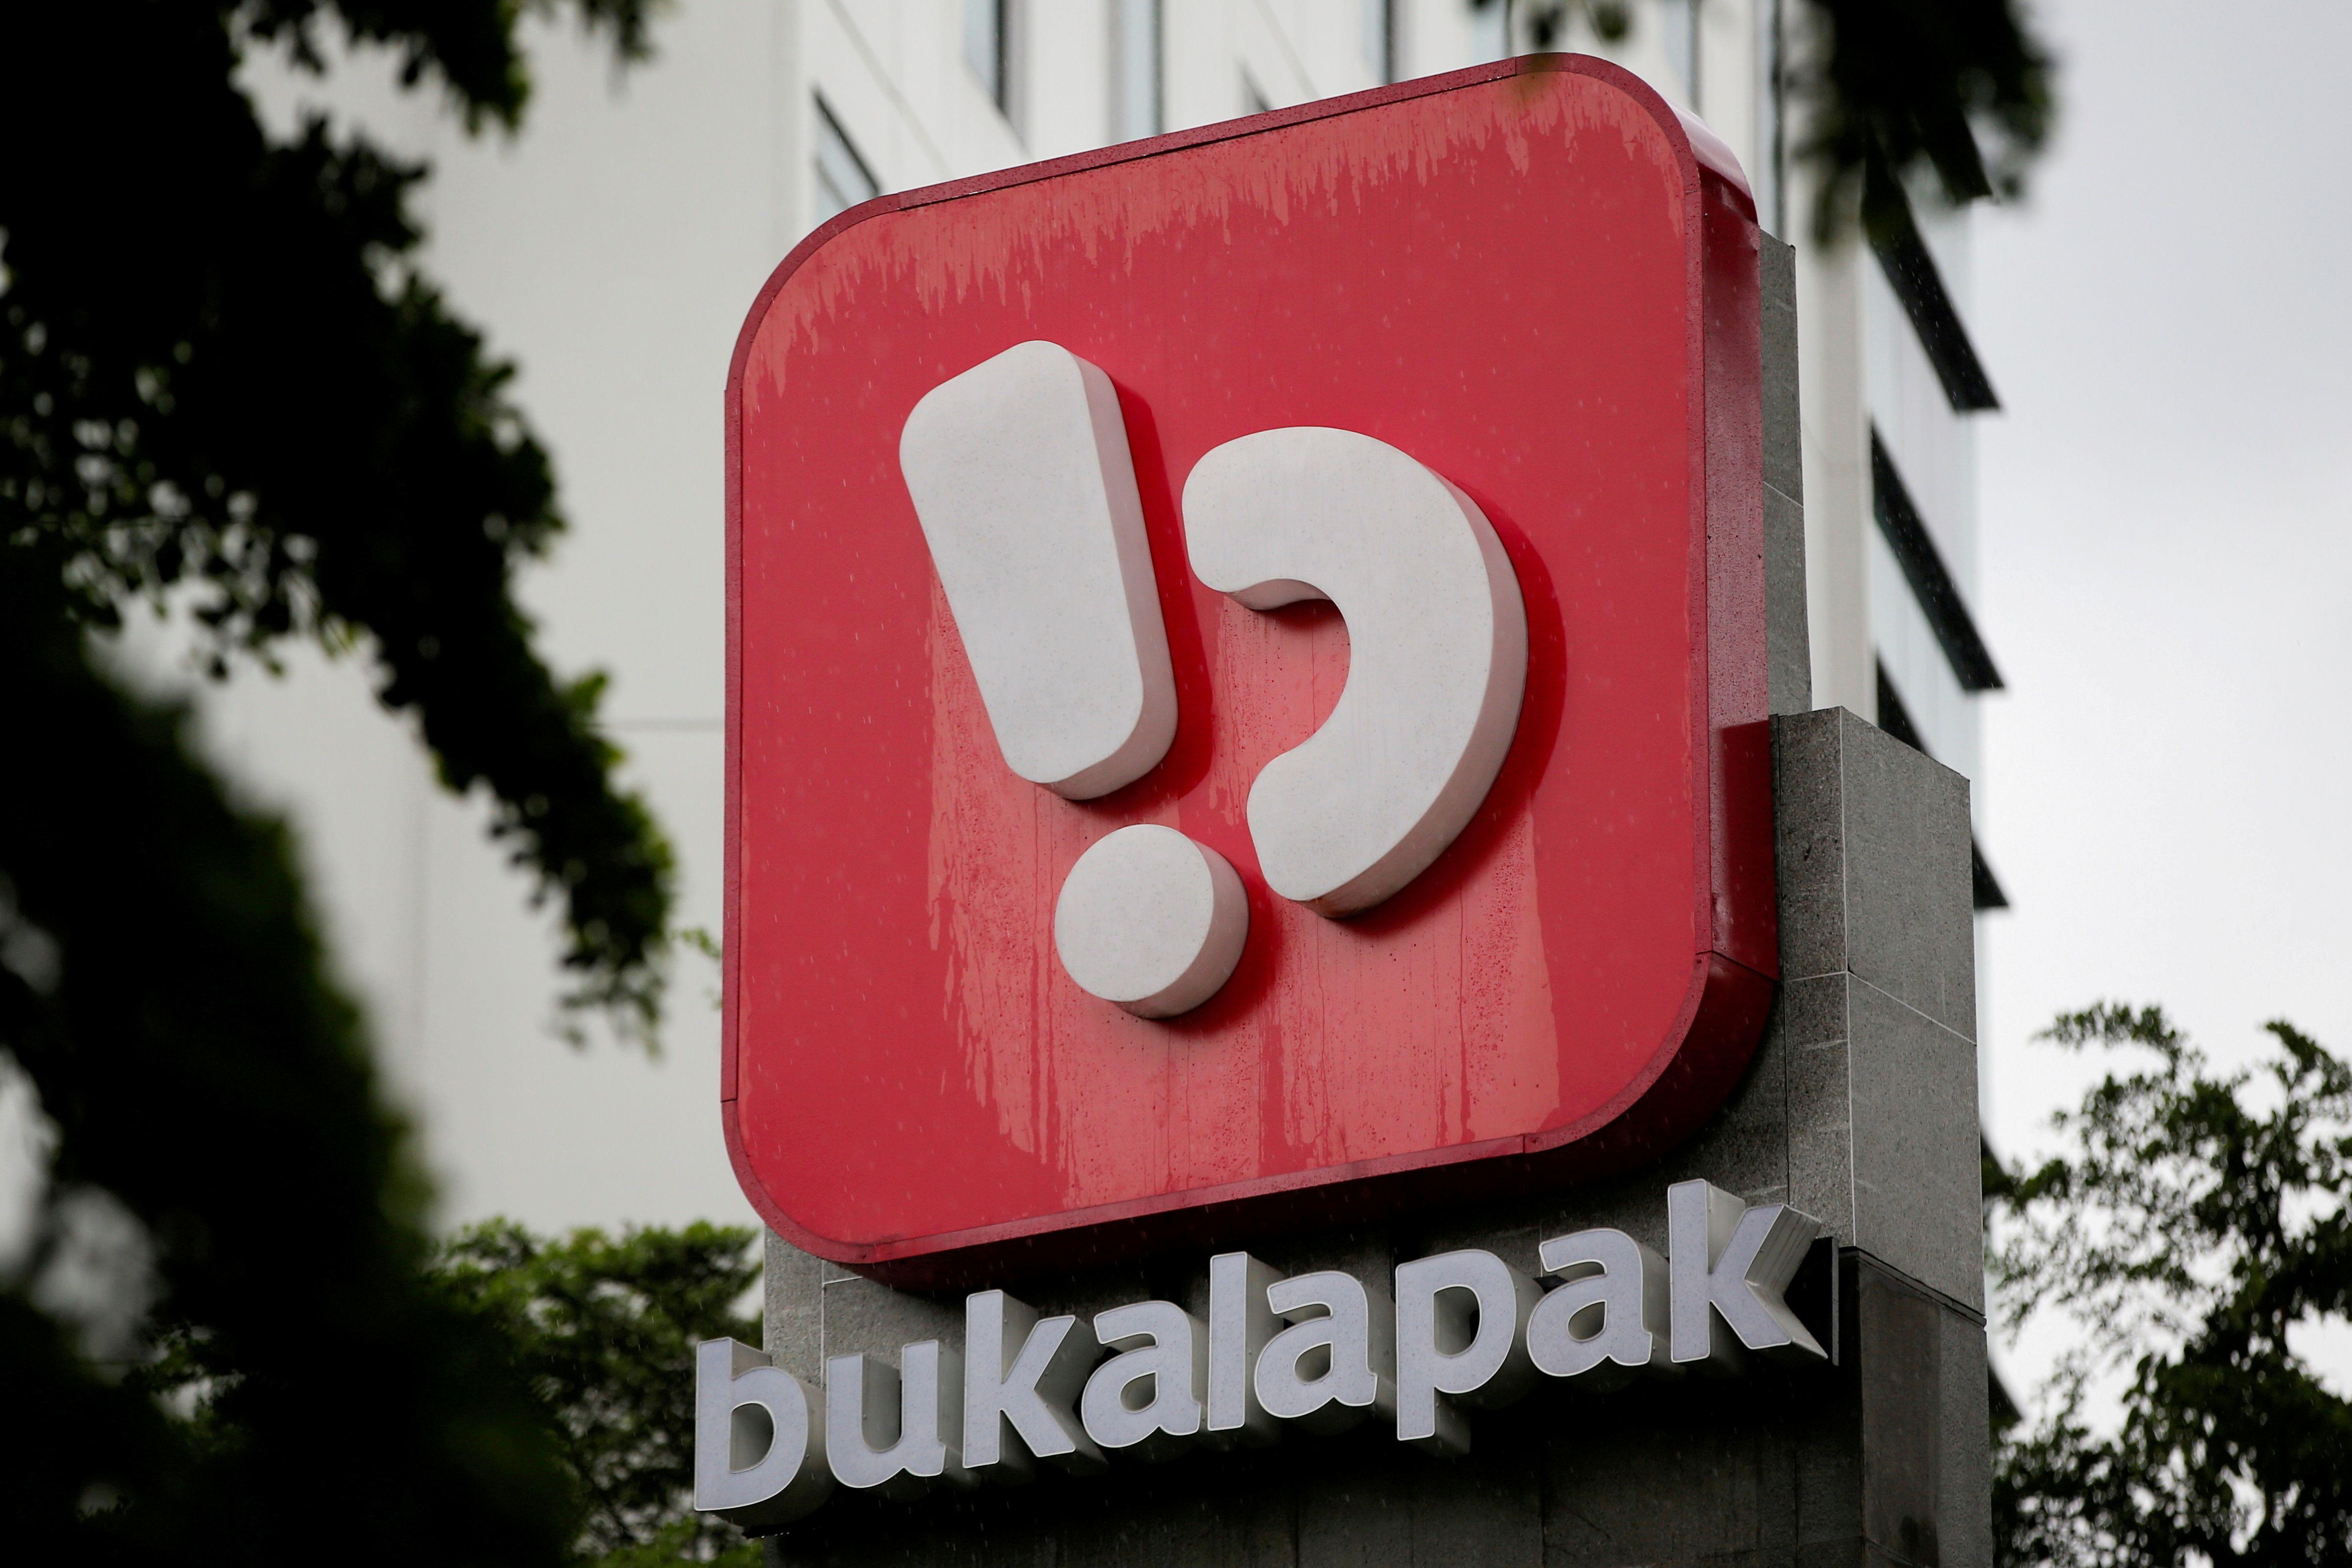 bukalapak Logo - Indonesian blockbuster IPO to set tone